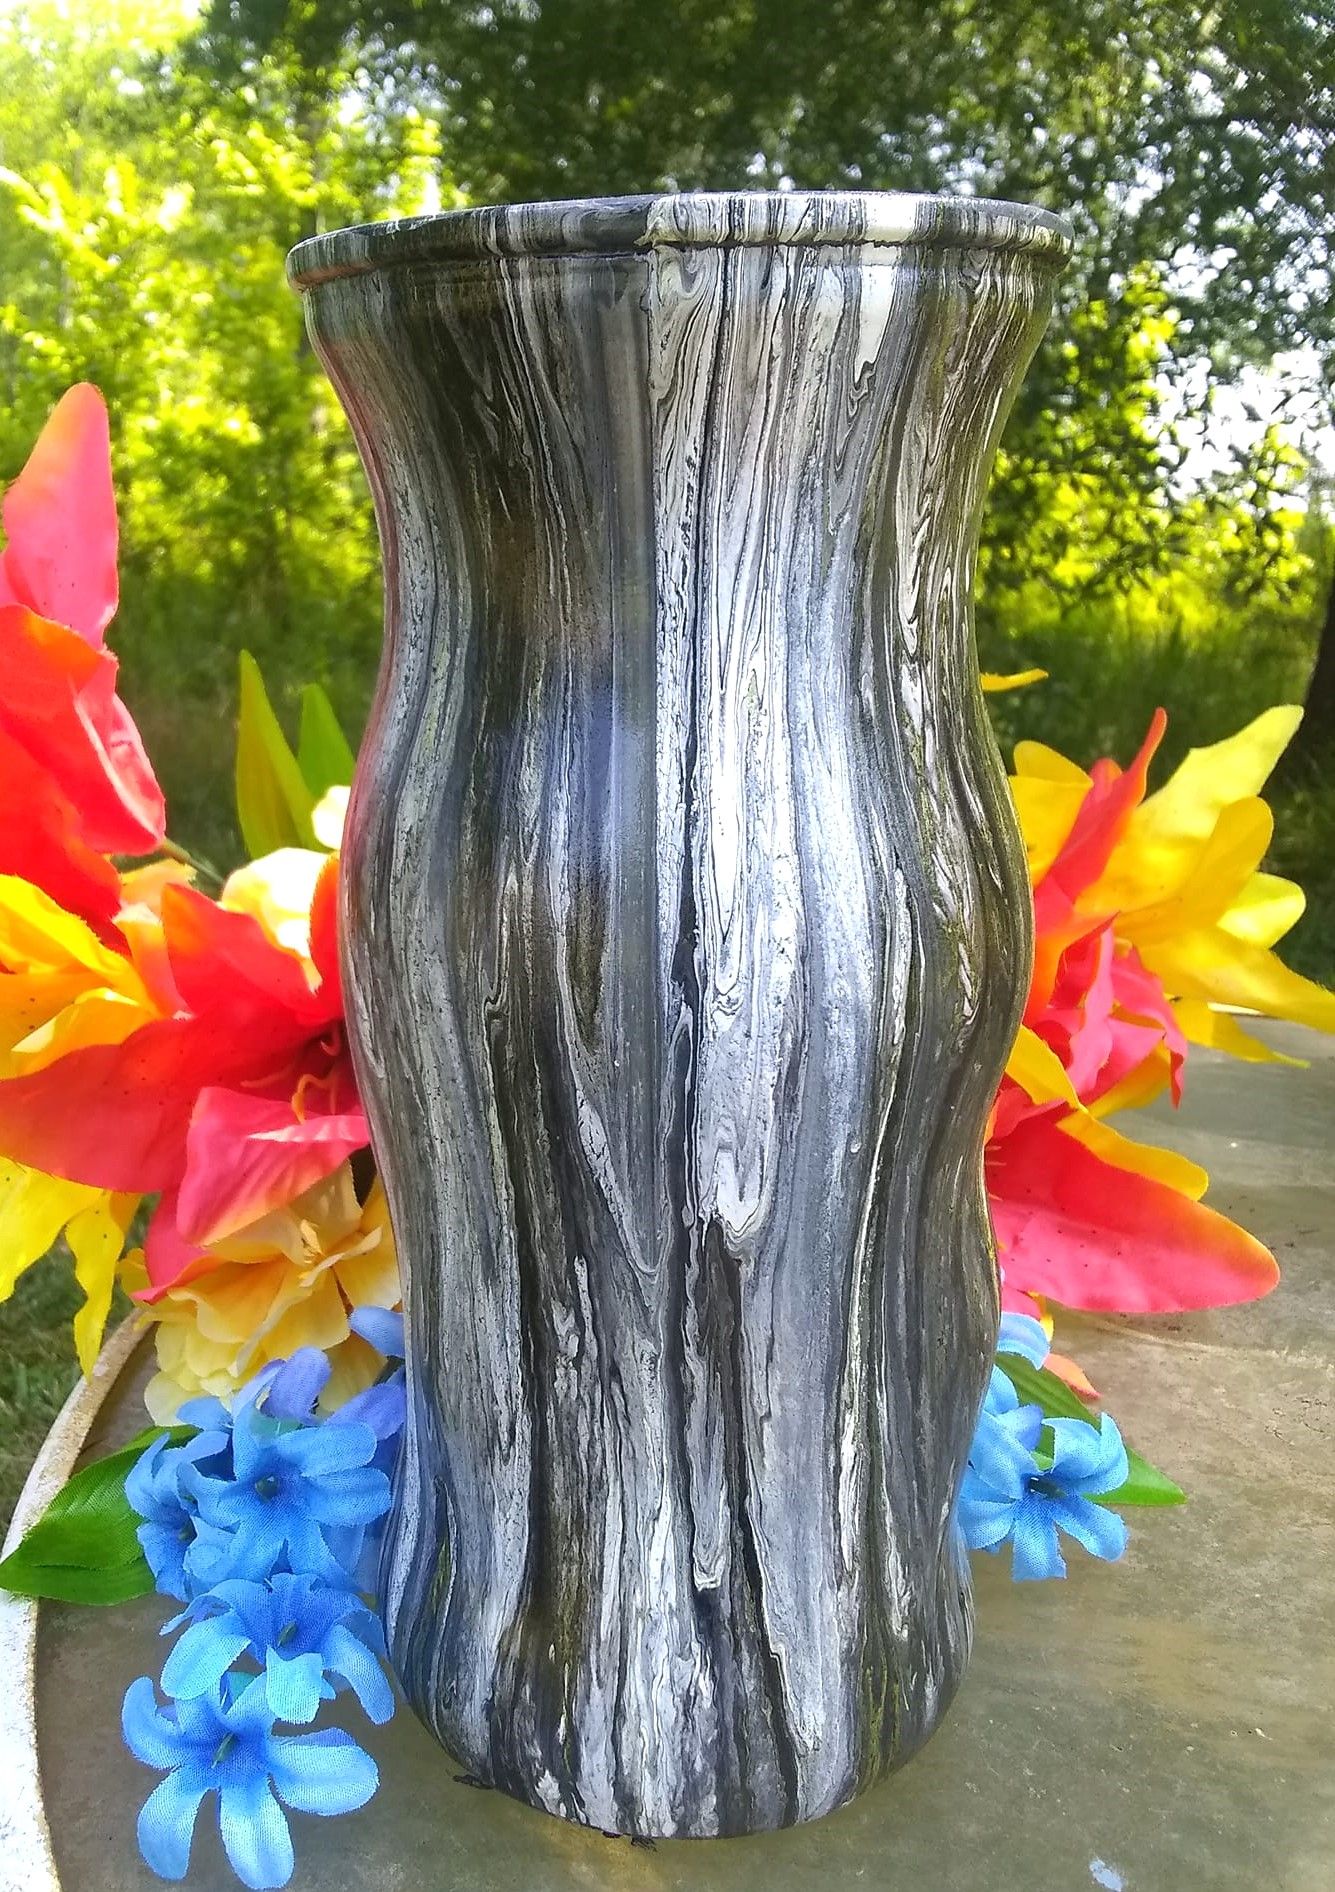 Black/white curvy vase - 1